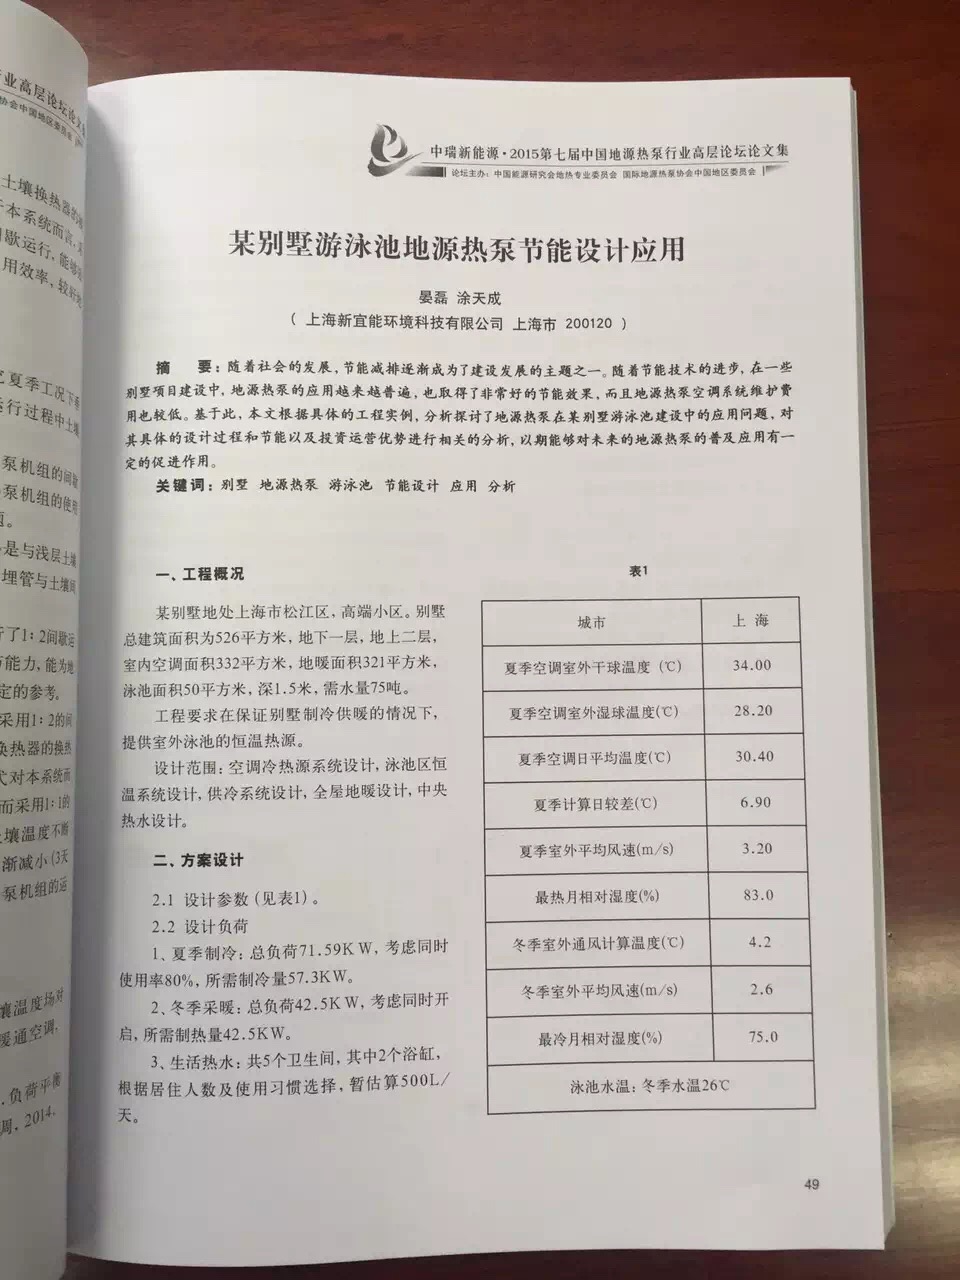 《第七届中国地源热泵行业高层论坛论文集》-新宜能论文